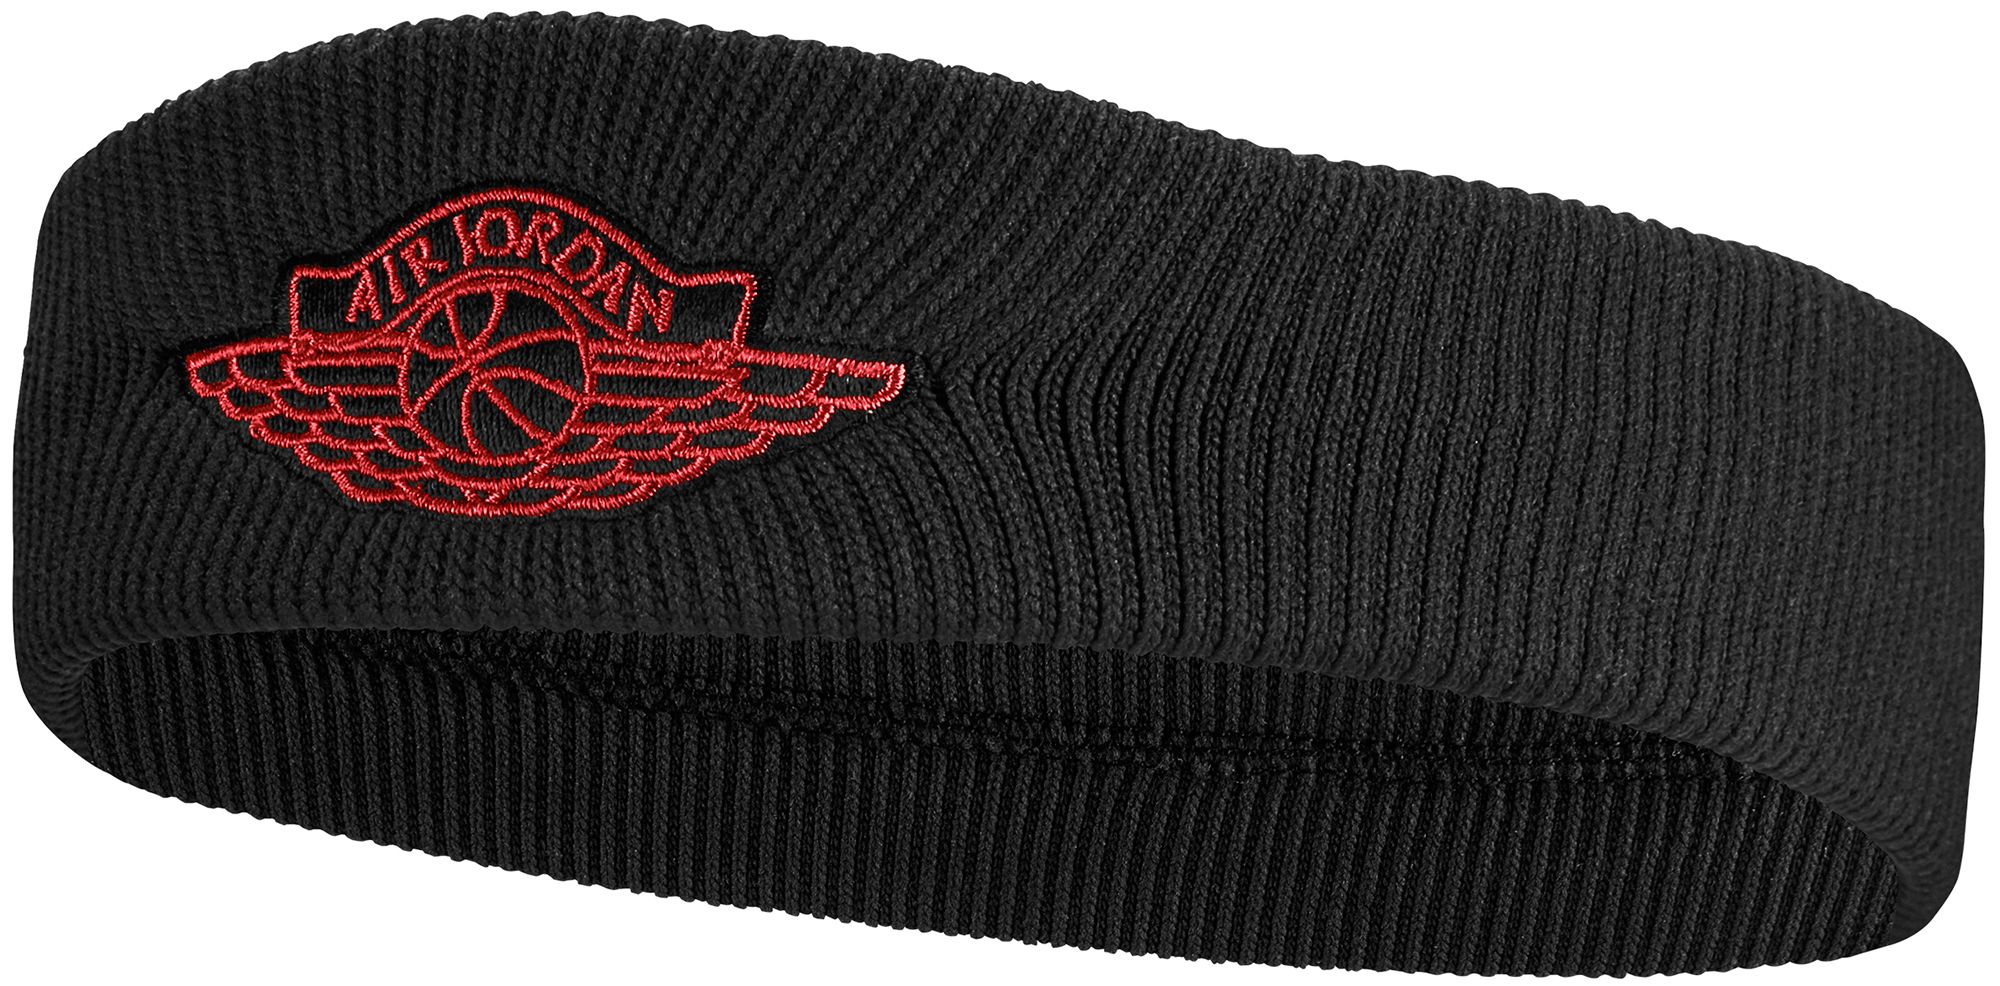 air jordan wings headband 2.0